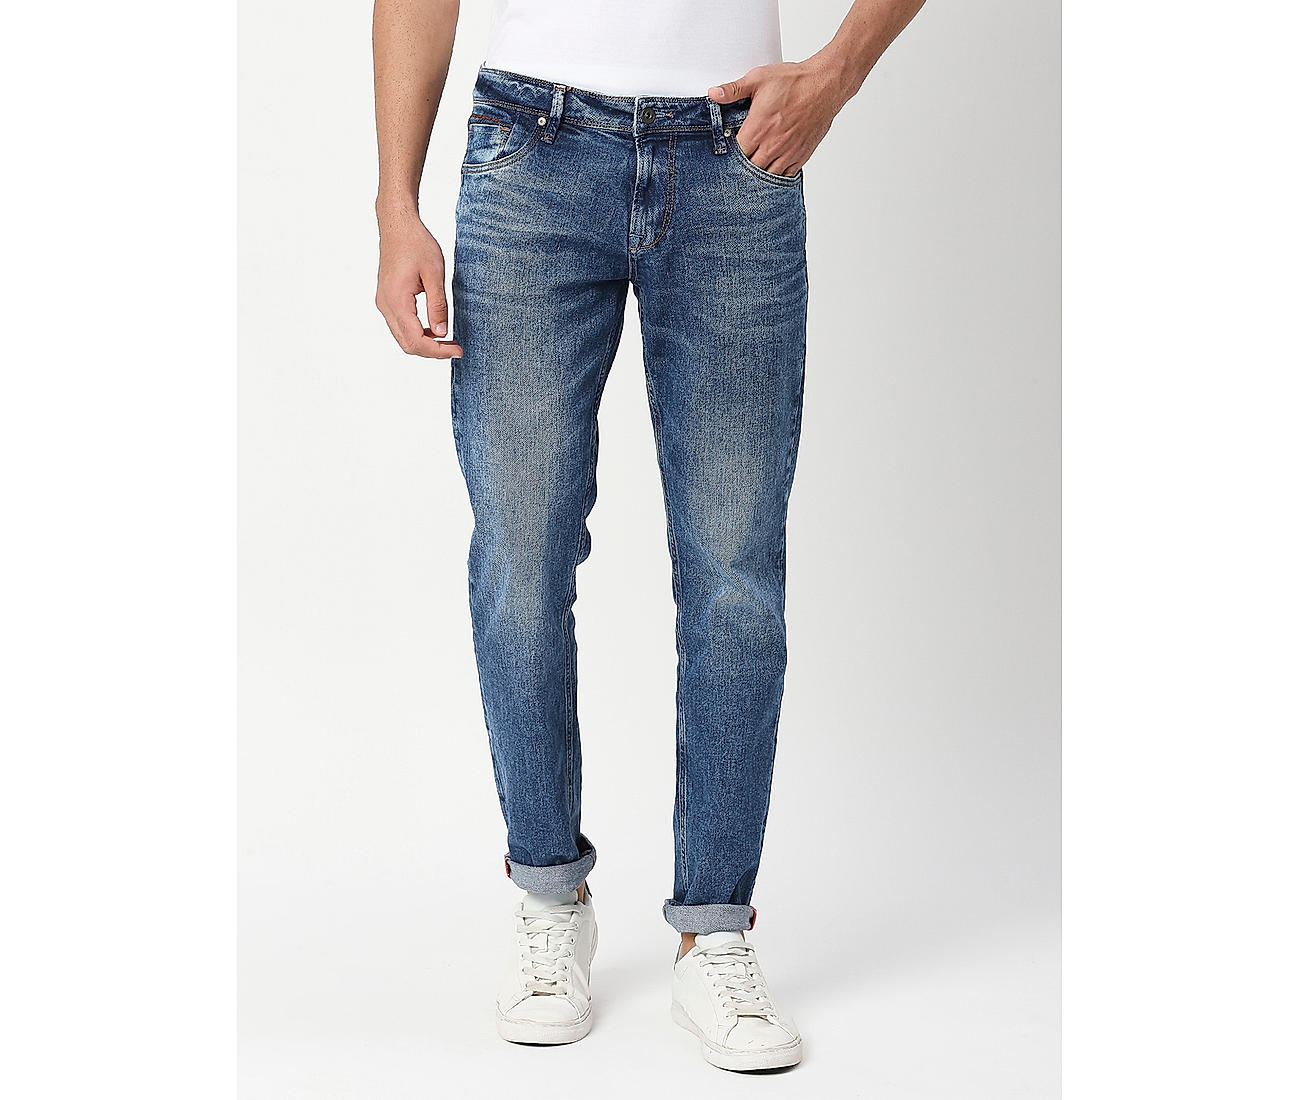 Buy Blue Solid Slim Fit Jeans for Men Online at Killer Jeans